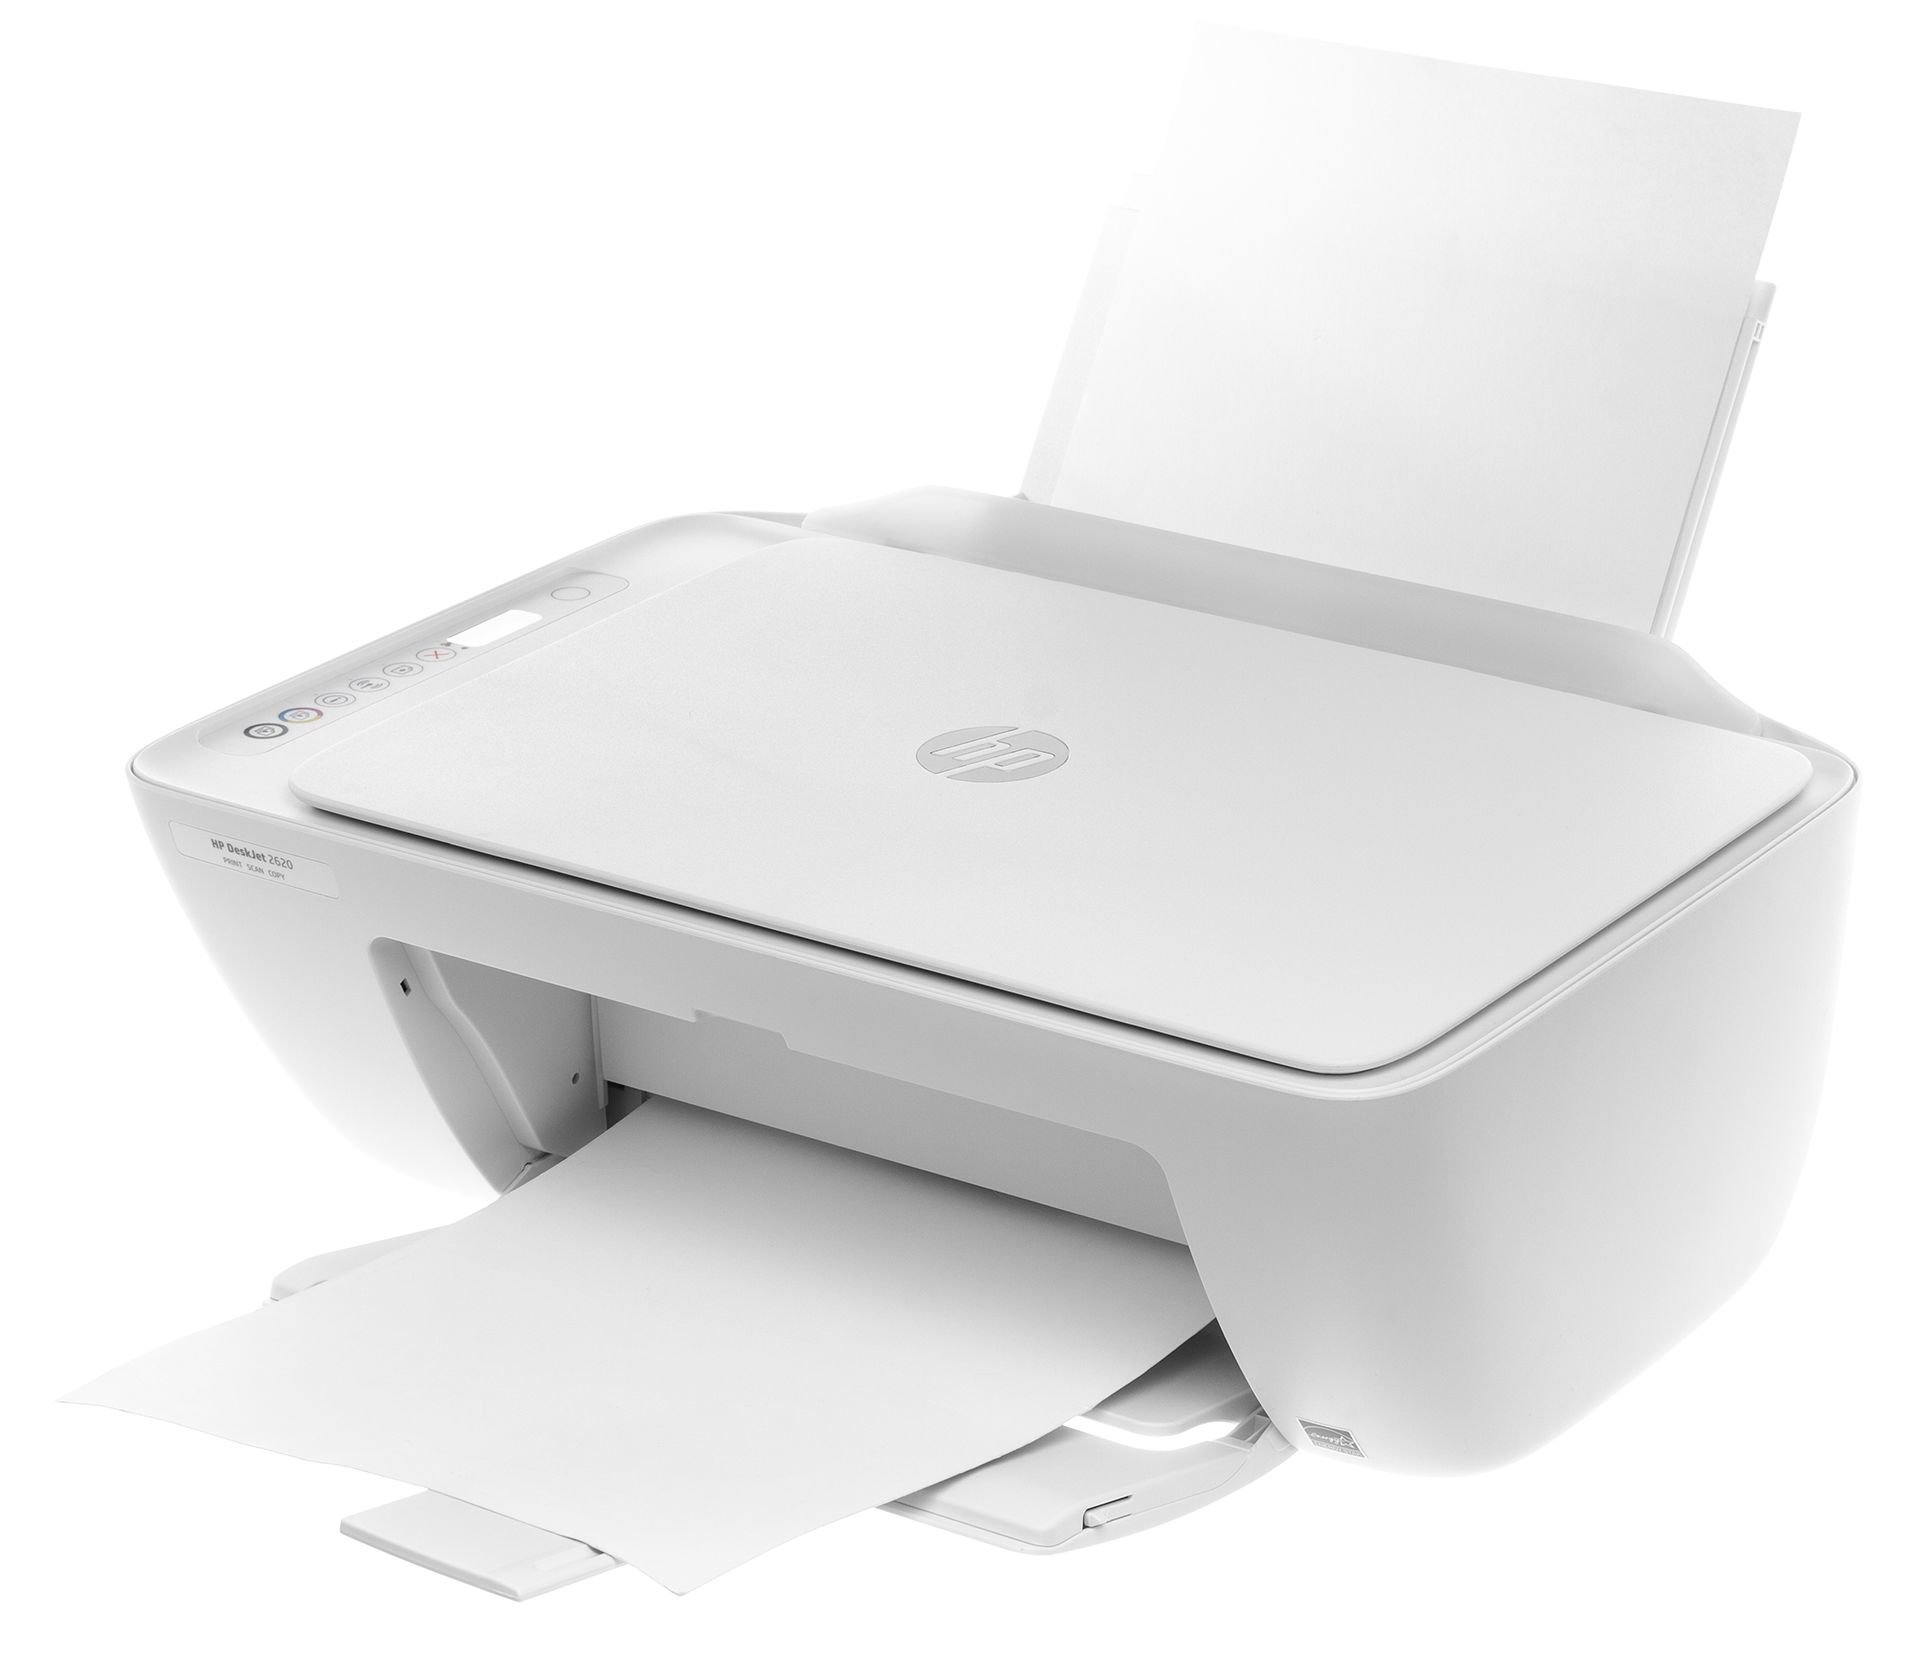 HP DeskJet Ink Advantage 2620 Wi-Fi Atrament Kolor Urządzenie  wielofunkcyjne - niskie ceny i opinie w Media Expert